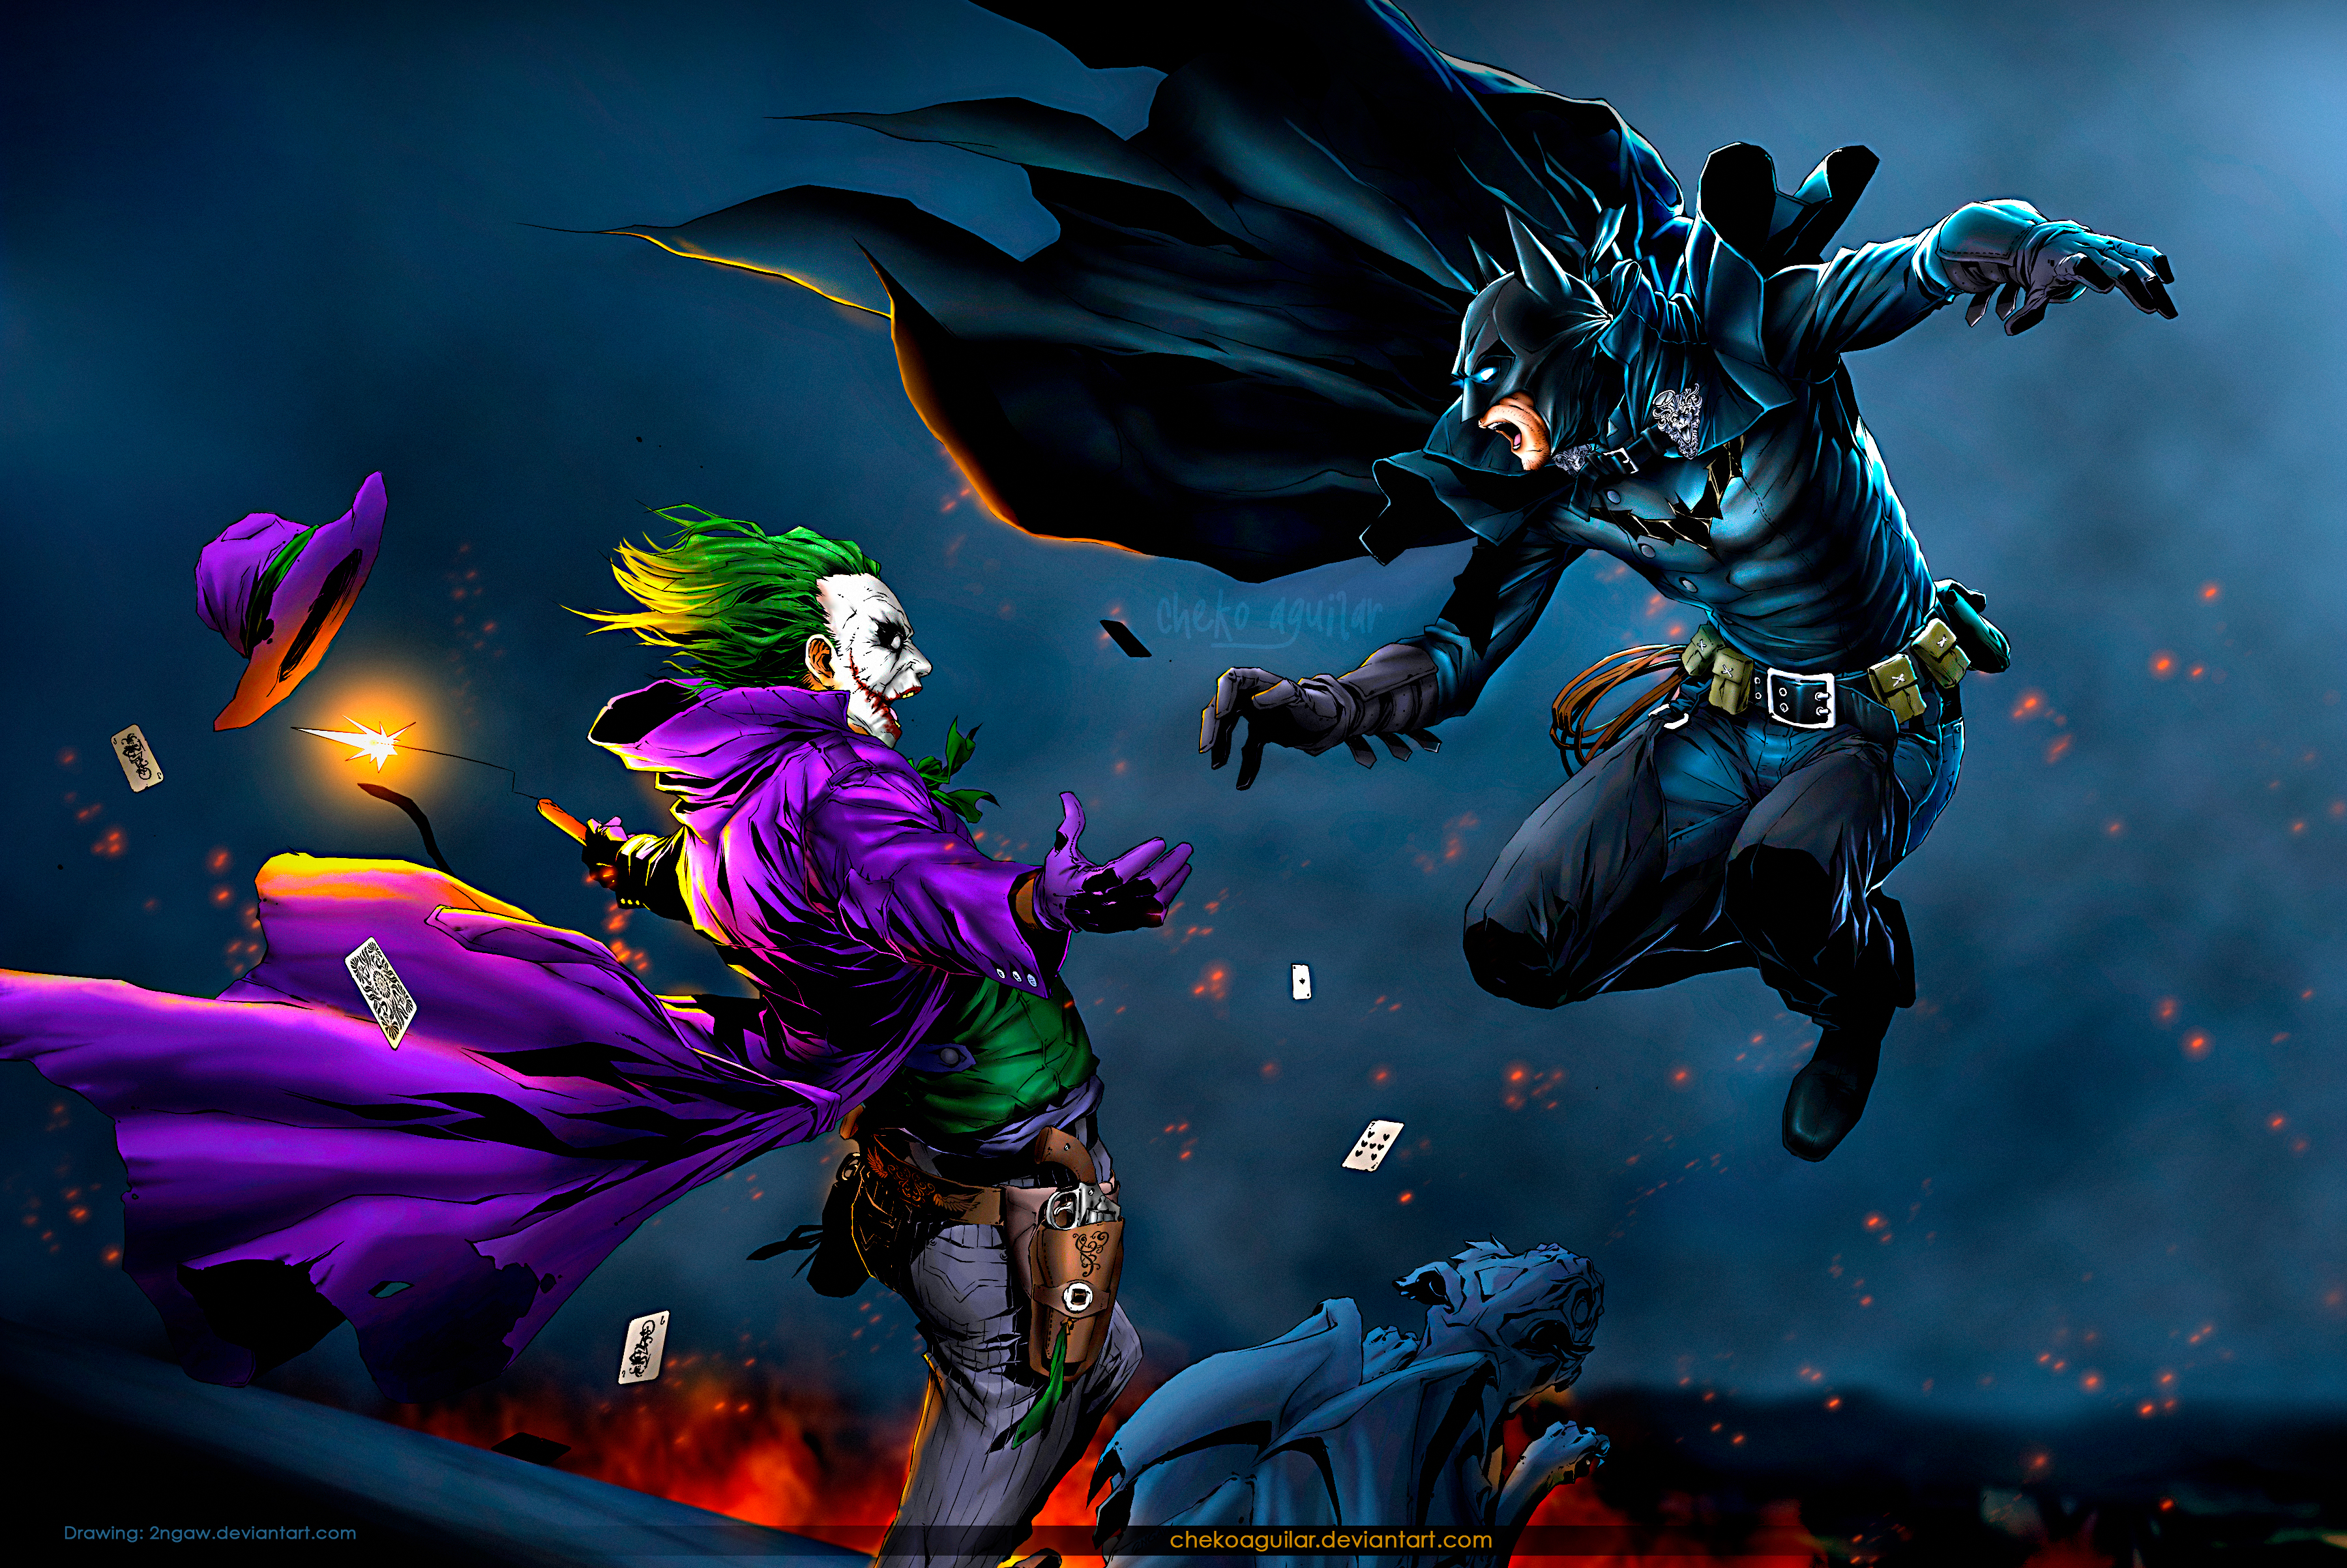 batman vs joker wallpaper hd